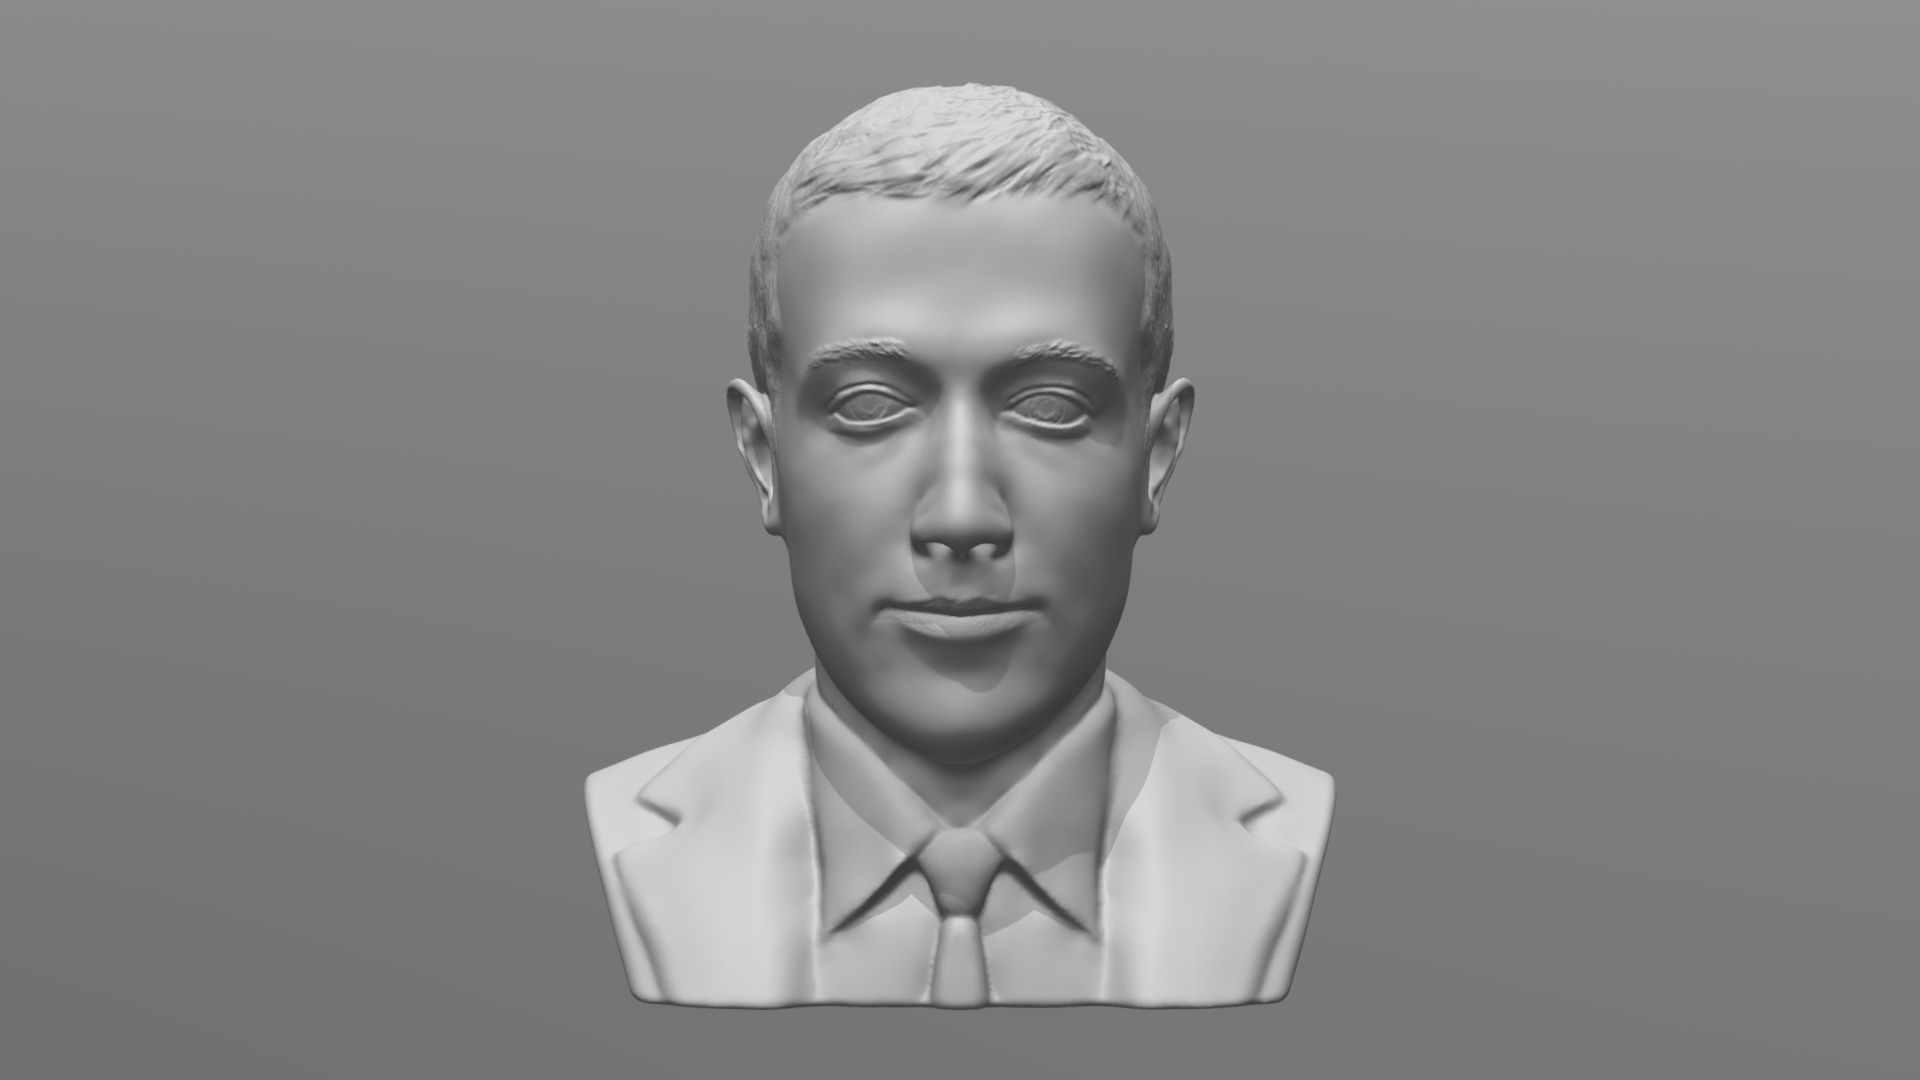 3D model Mark Zuckerberg bust for 3D printing - This is a 3D model of the Mark Zuckerberg bust for 3D printing. The 3D model is about a man in a white shirt.